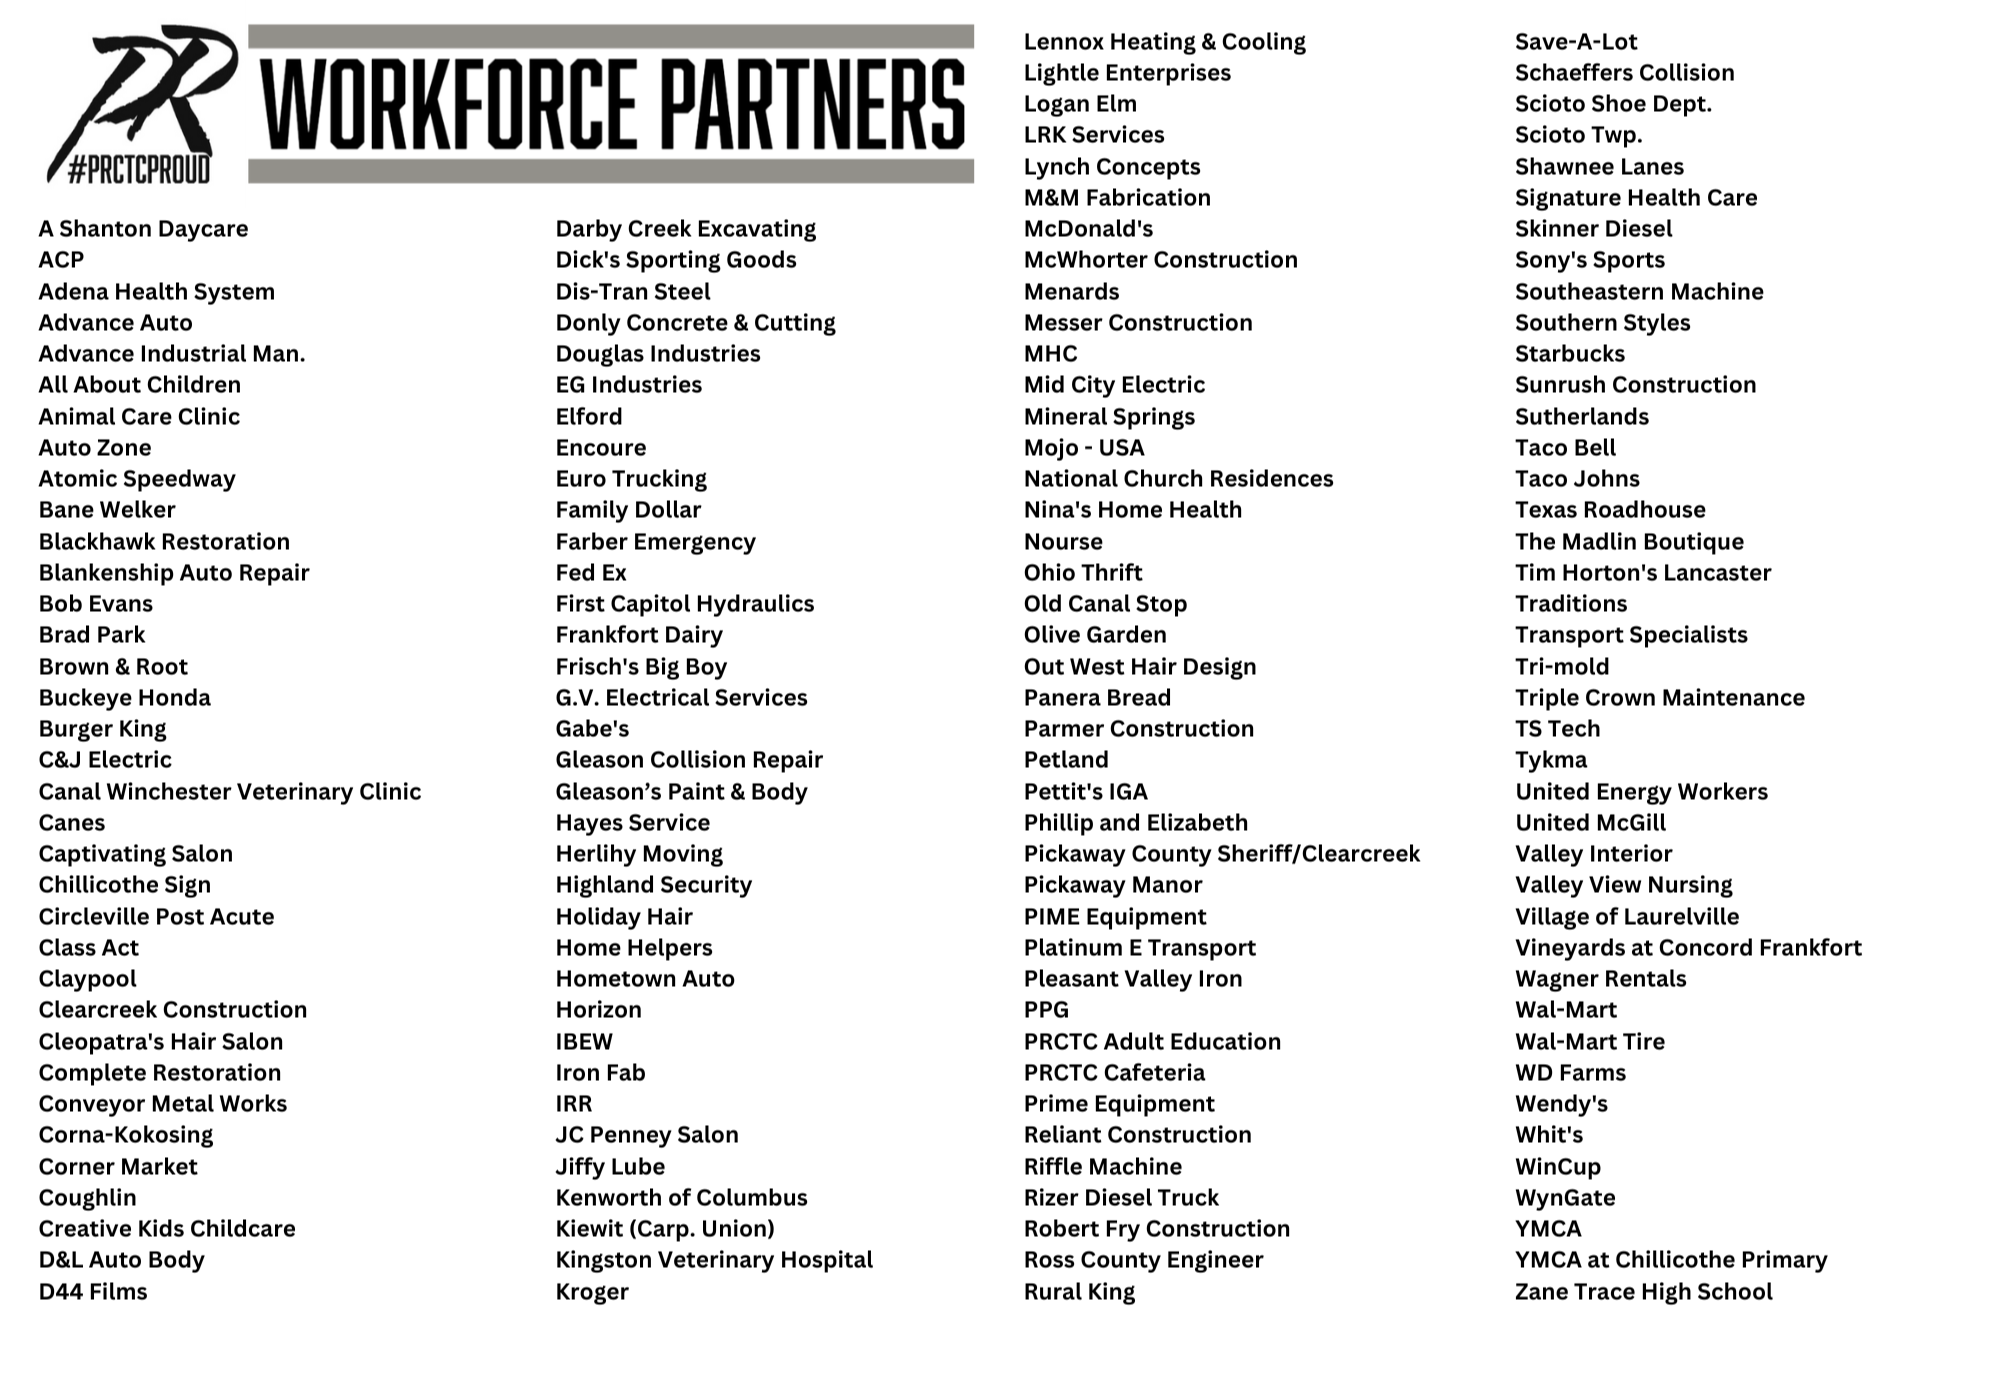 Workforce Partners